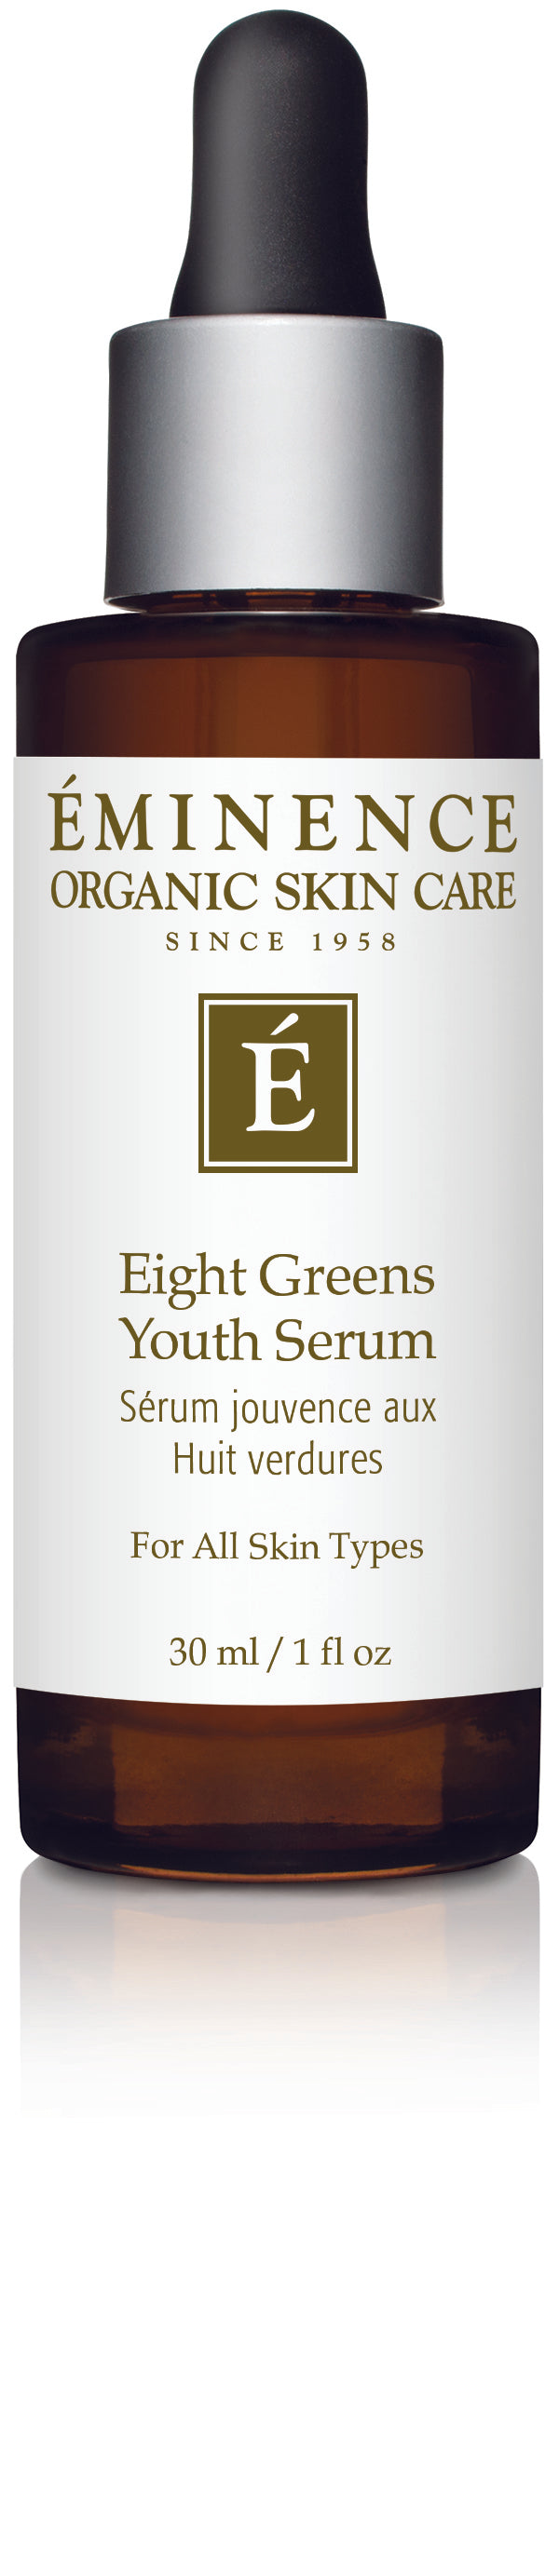 Eight Greens Youth Serum